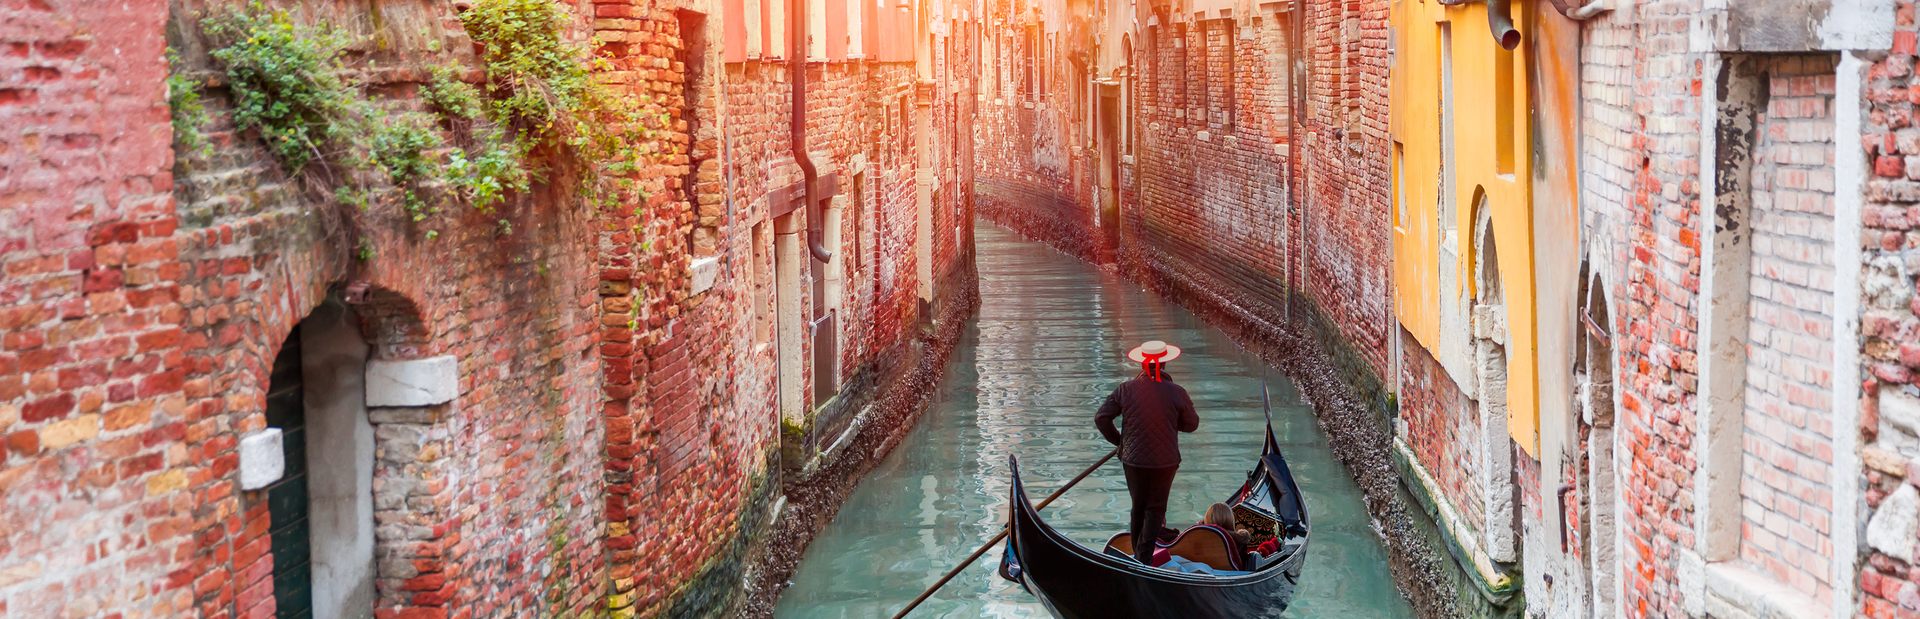 Venice guide